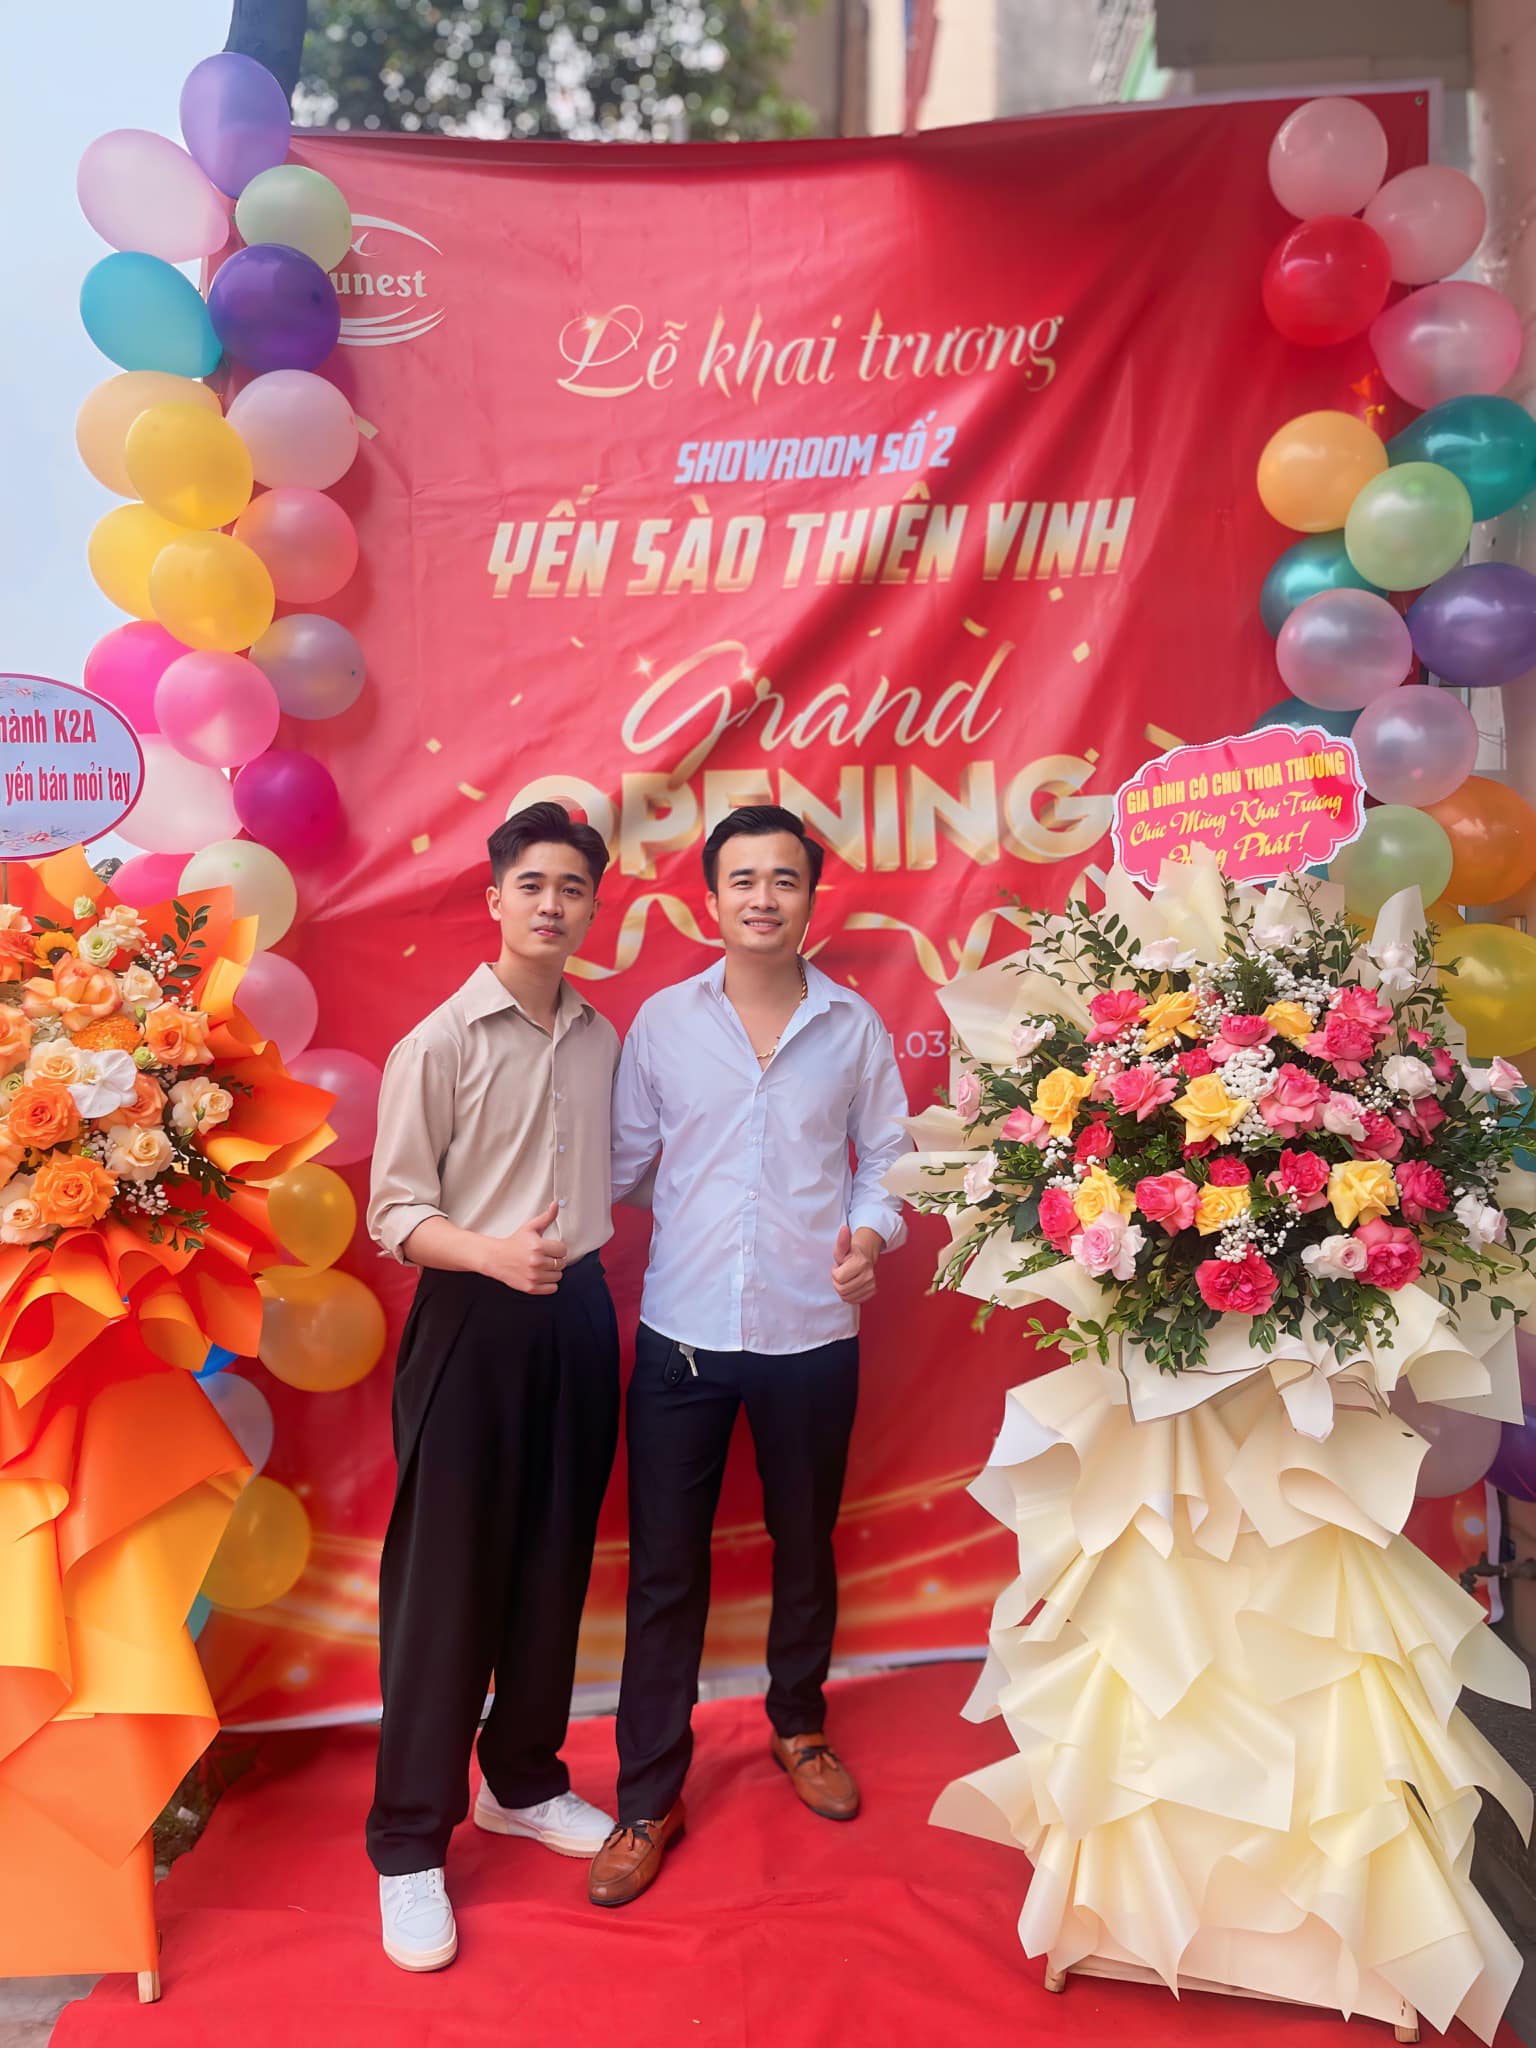 A. Vinh đối tác Natunest khai trương chi nhánh 2 tại Quảng Ninh